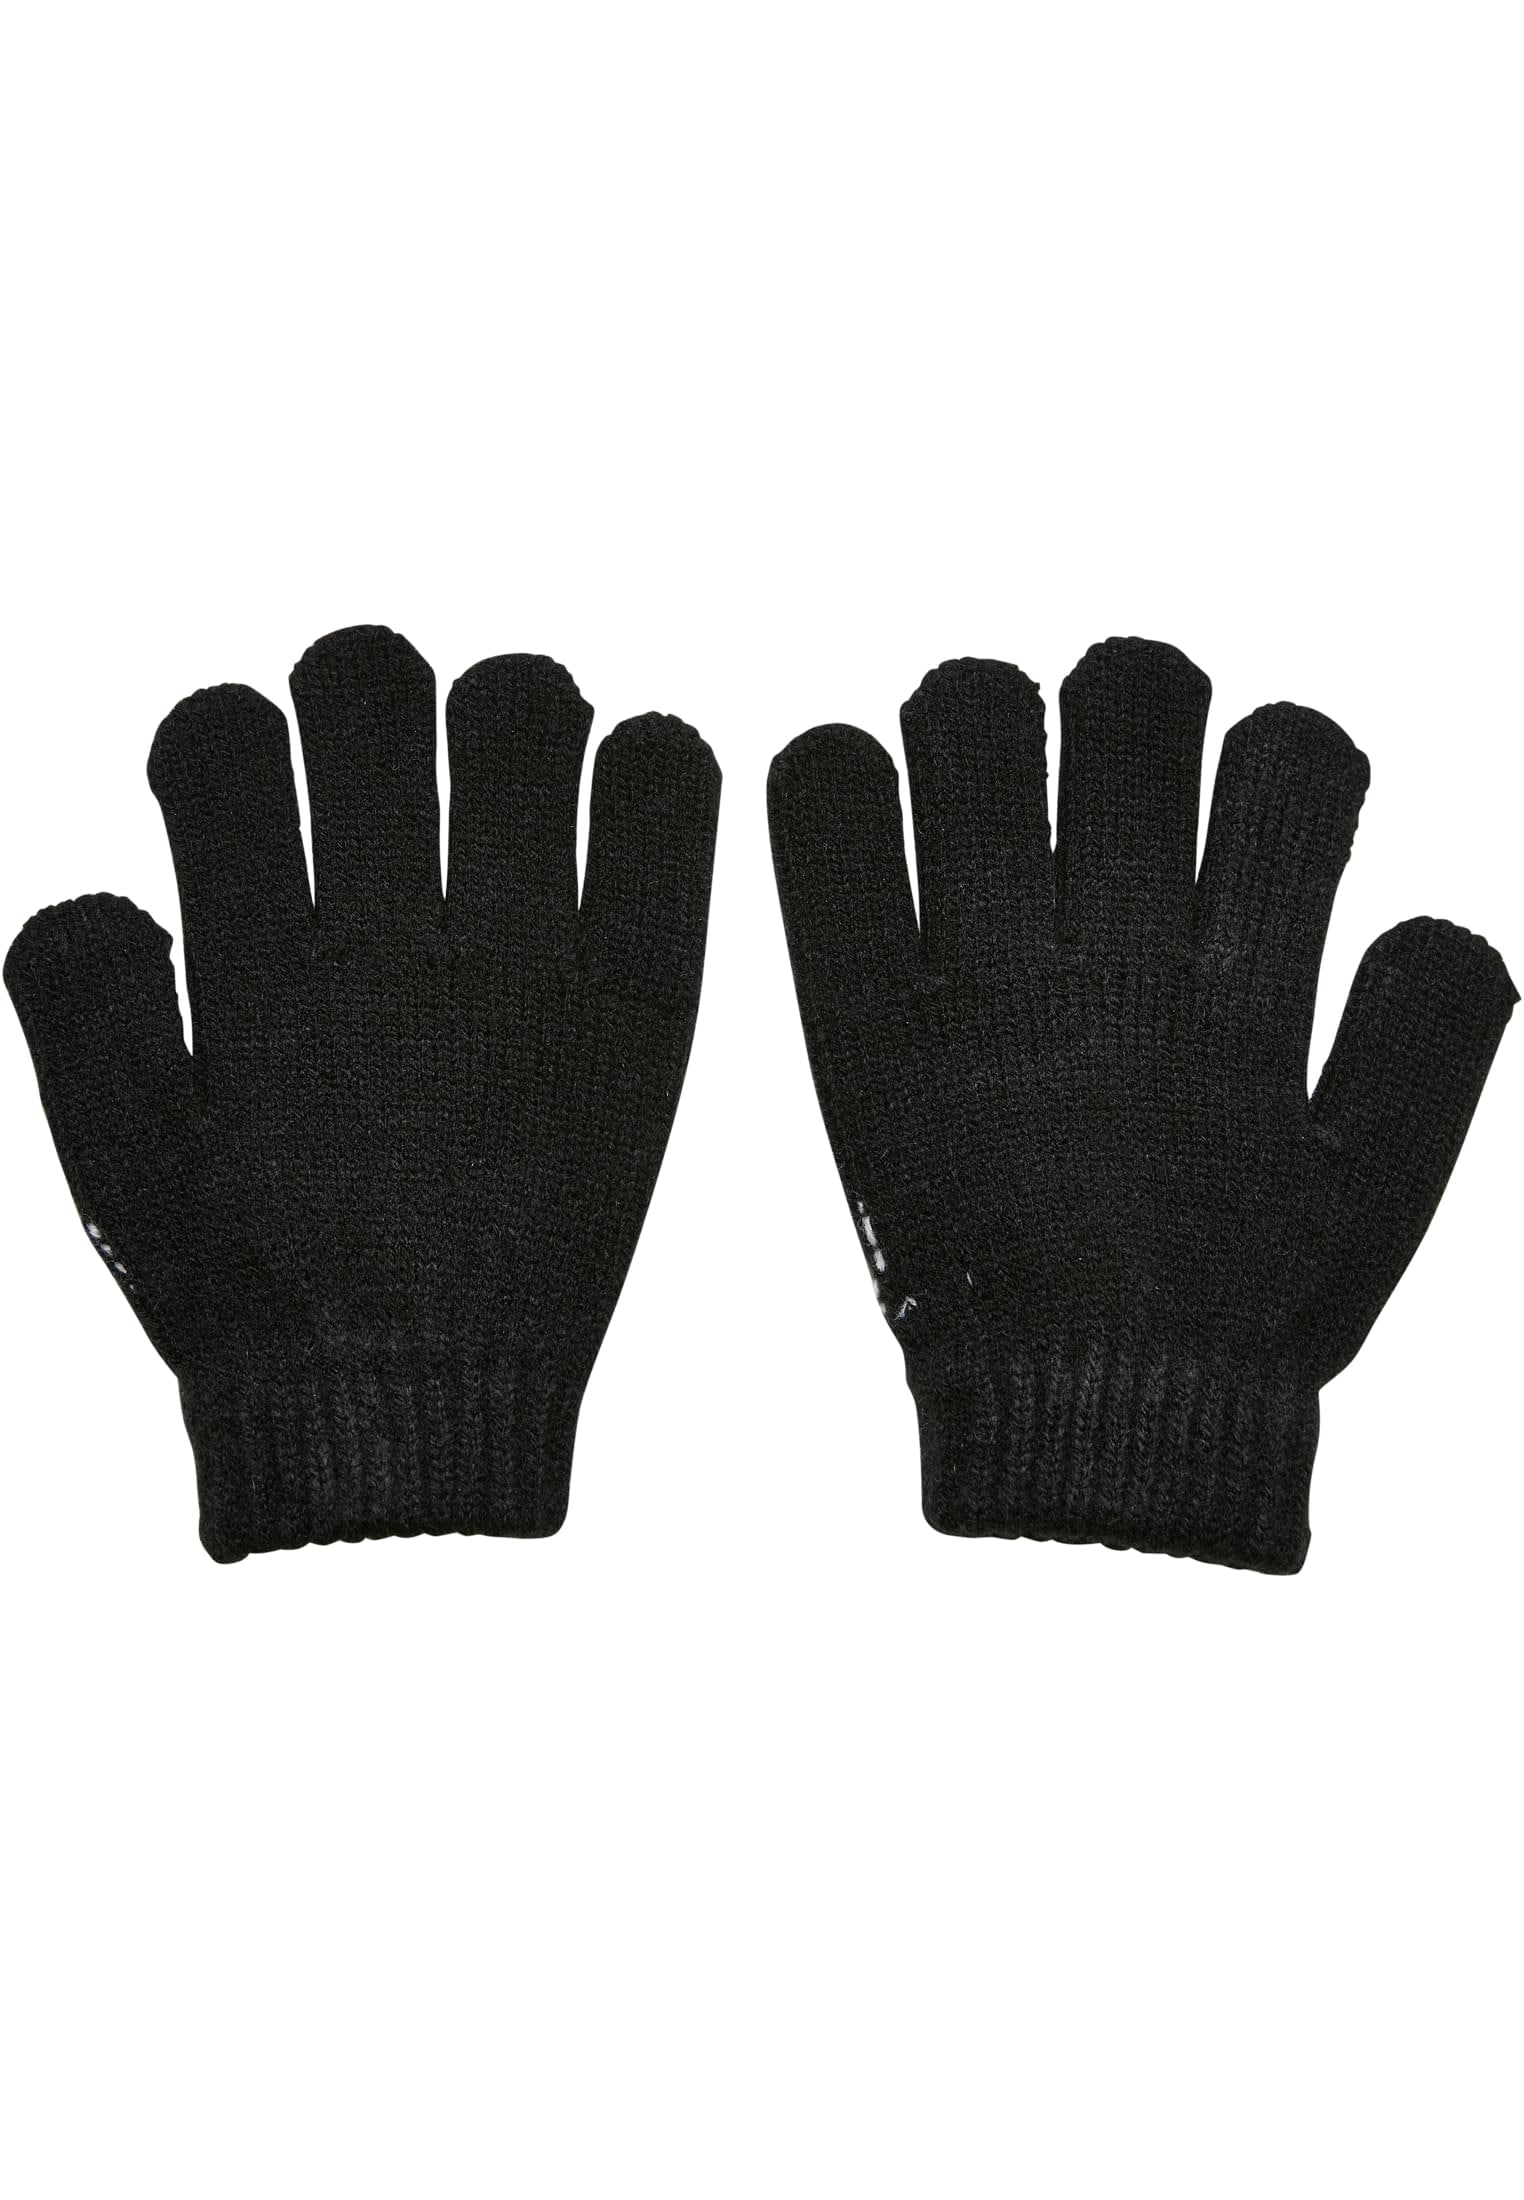 Glove Kids« walking Baumwollhandschuhe I\'m online | MisterTee NASA Knit kaufen »Accessoires